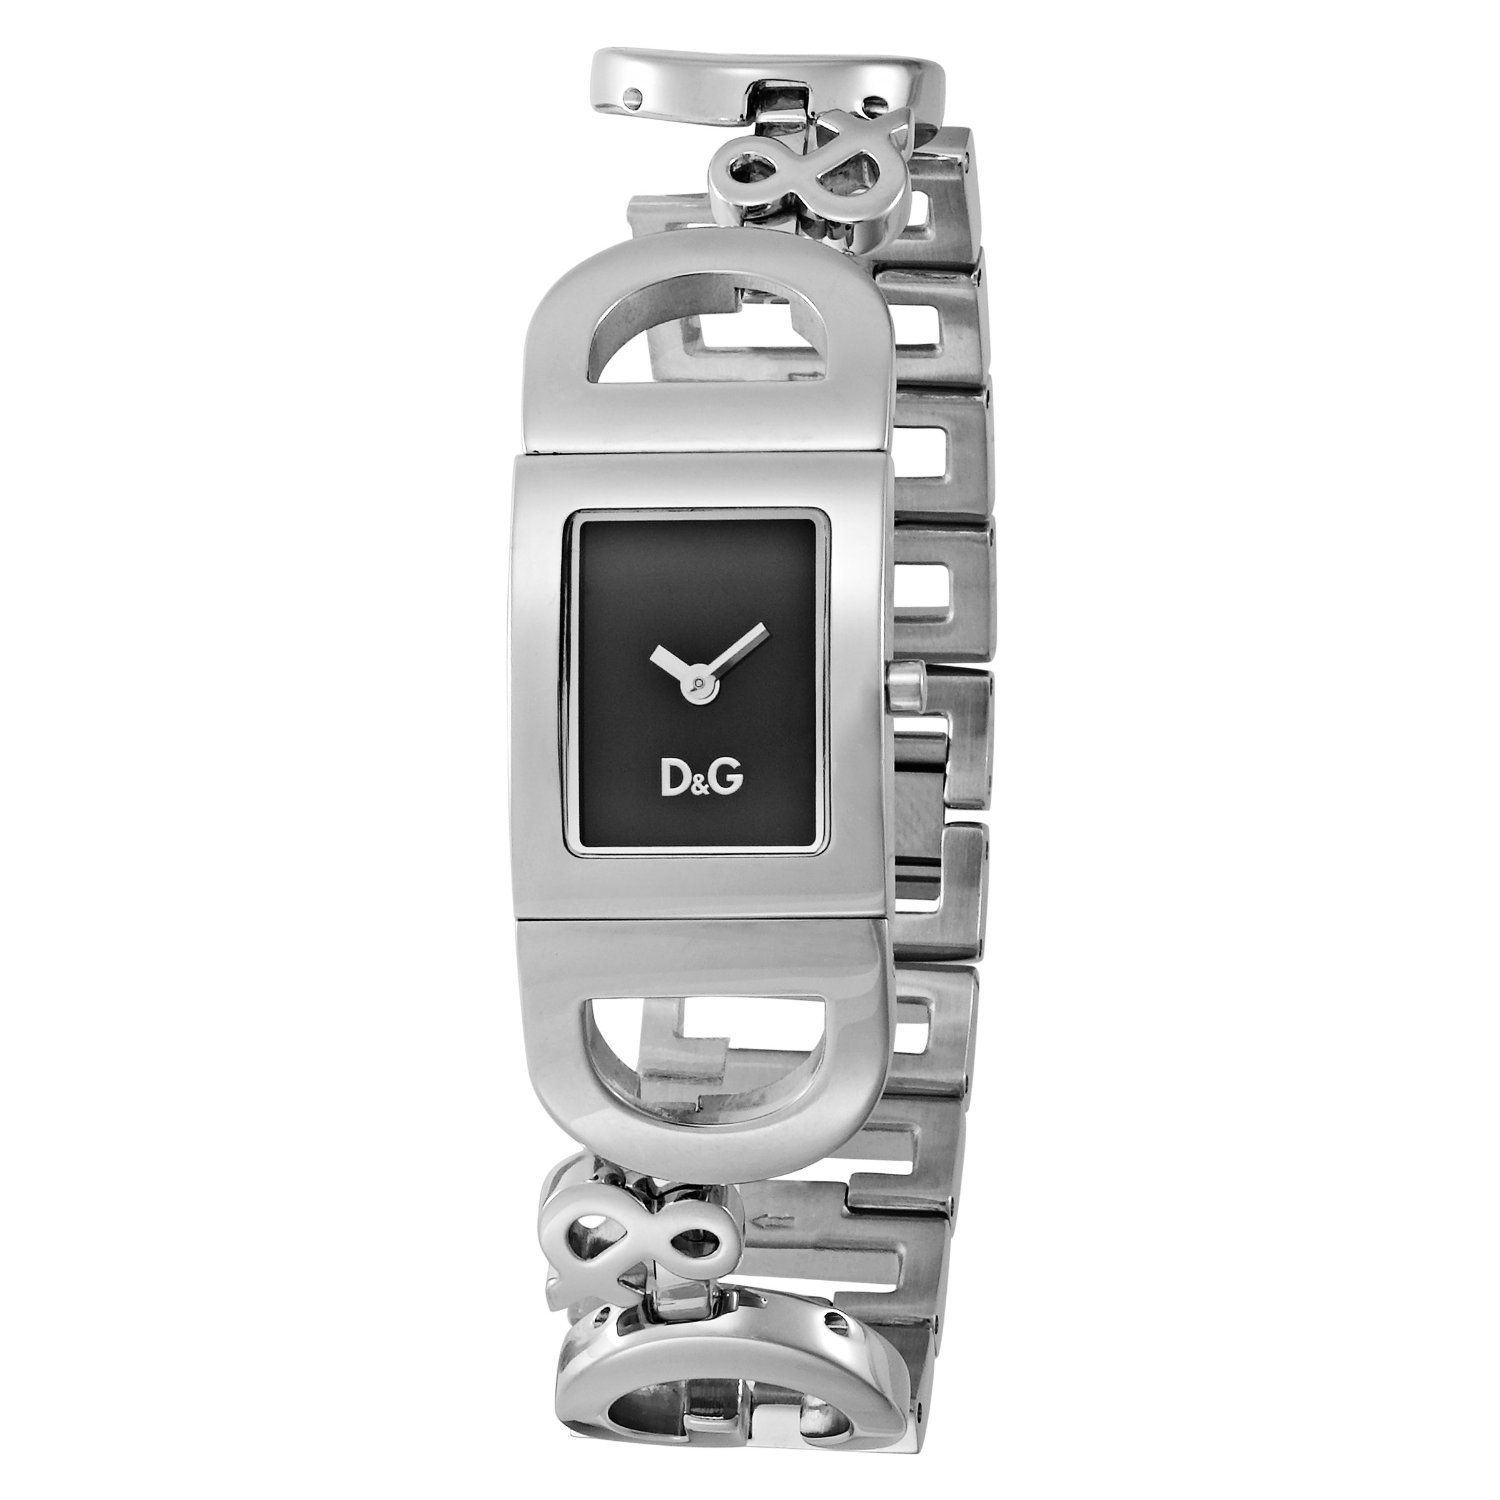 Часы дольче габбана. Часы Dolce Gabbana dw0091. Наручные часы Dolce & Gabbana DG-dw0026. Часы d&g - Dolce&Gabbana dw0379. Наручные часы Dolce & Gabbana DG-dw0476.